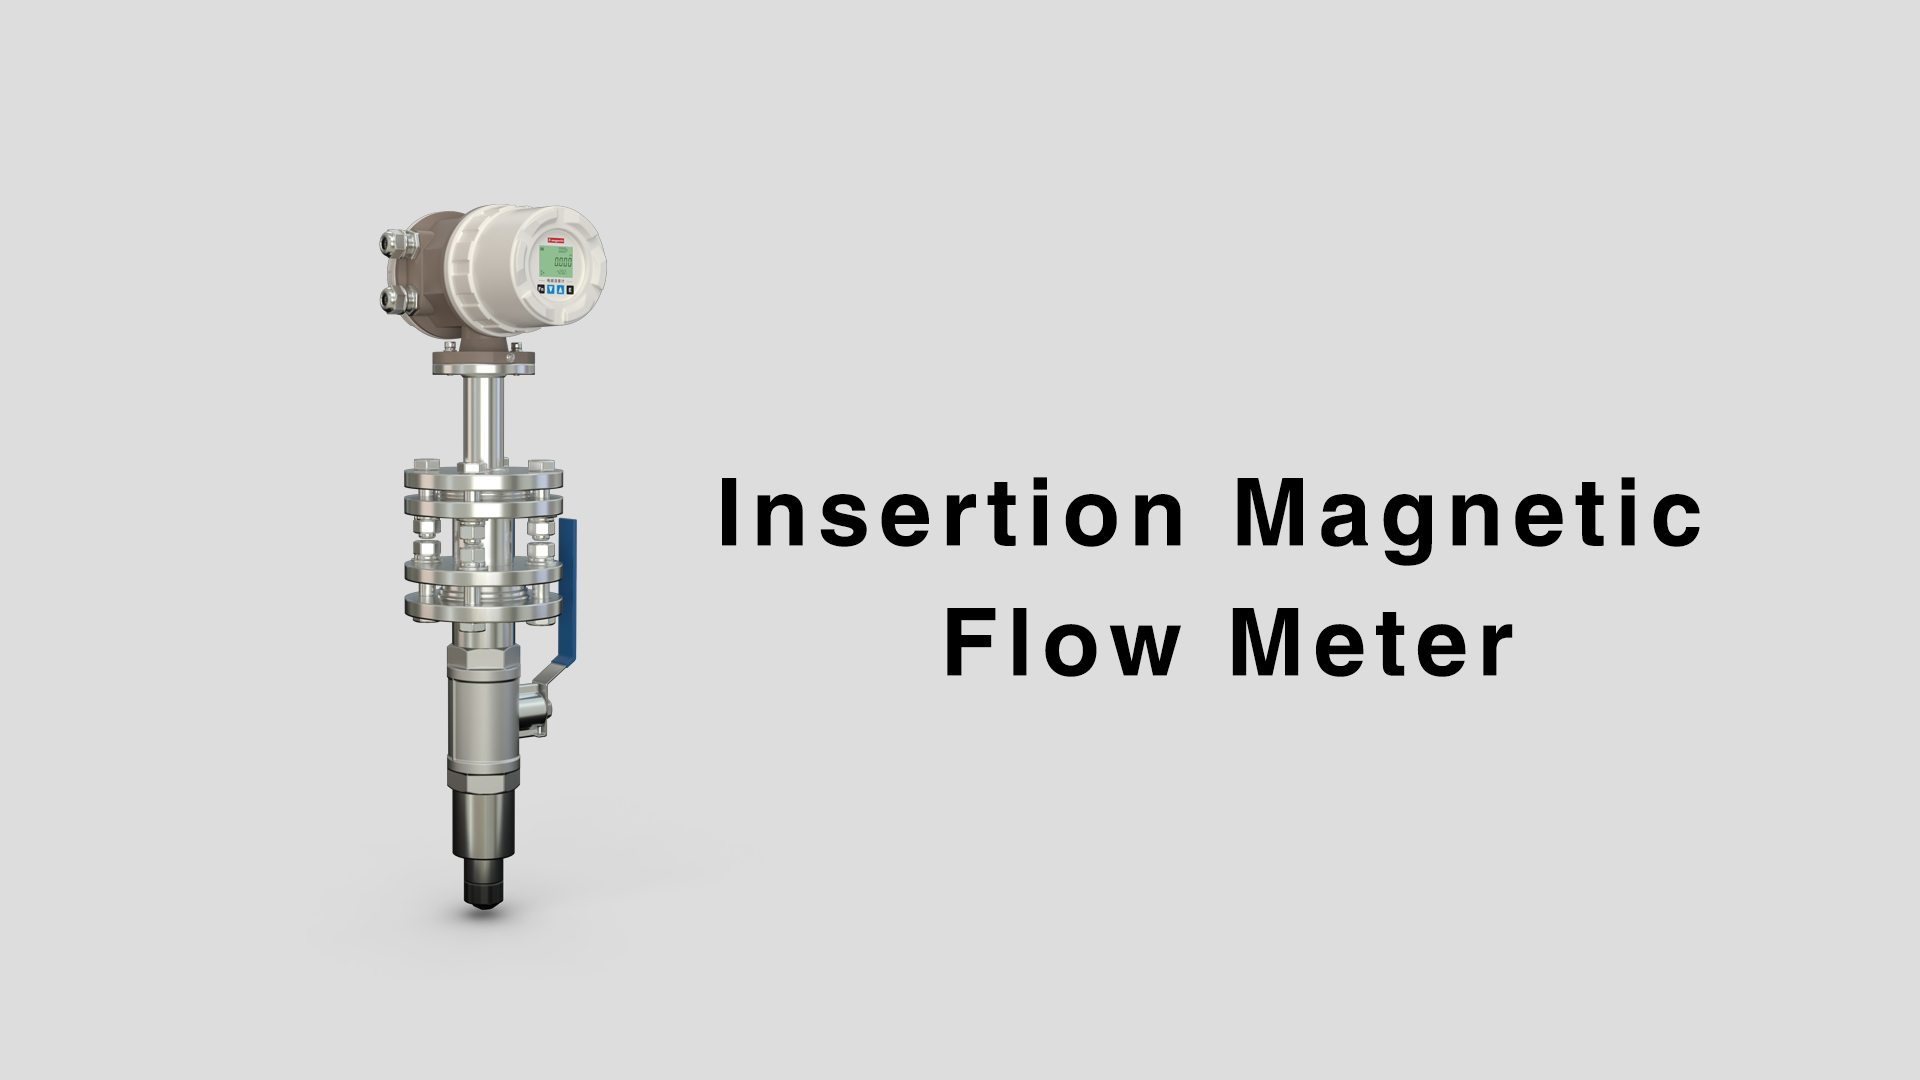 Caudalímetro magnético de inserción